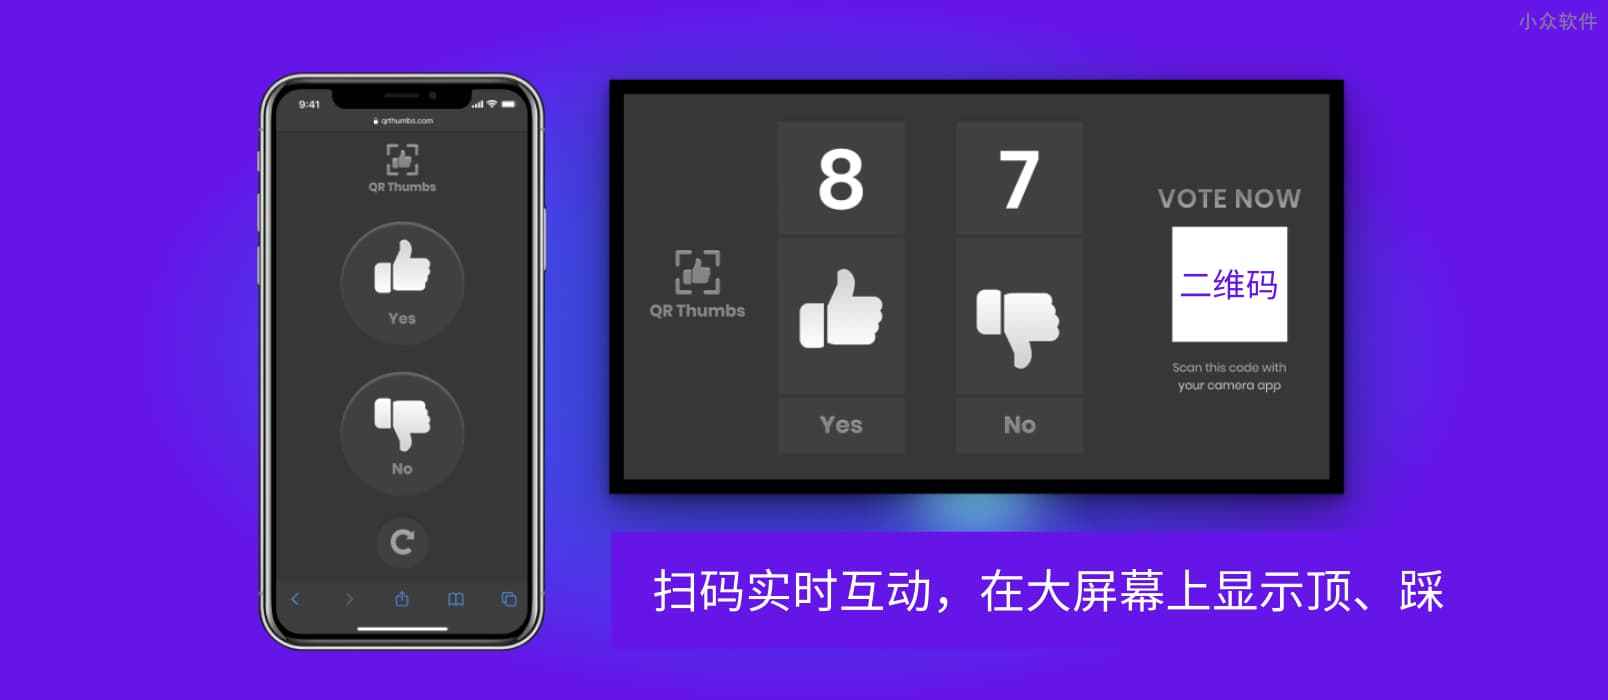 QR Thumbs - 扫码实时互动，在大屏幕上显示顶、踩